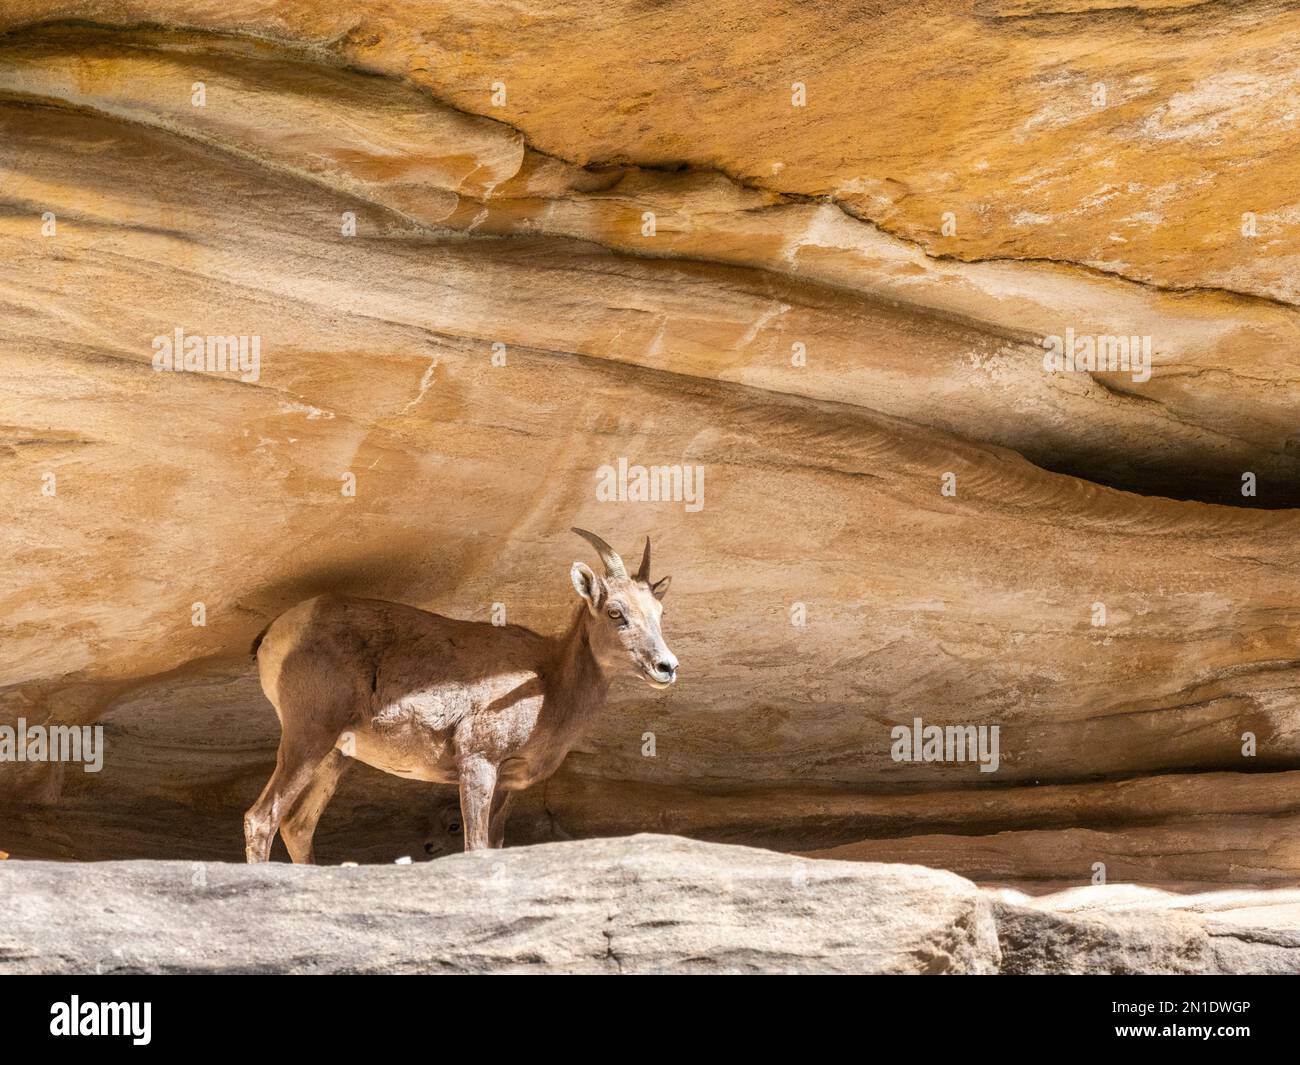 Une femelle adulte de mouflons (Ovis canadensis nelsoni), dans une grotte à l'ombre dans le parc national du Grand Canyon, Arizona, États-Unis d'Amérique Banque D'Images